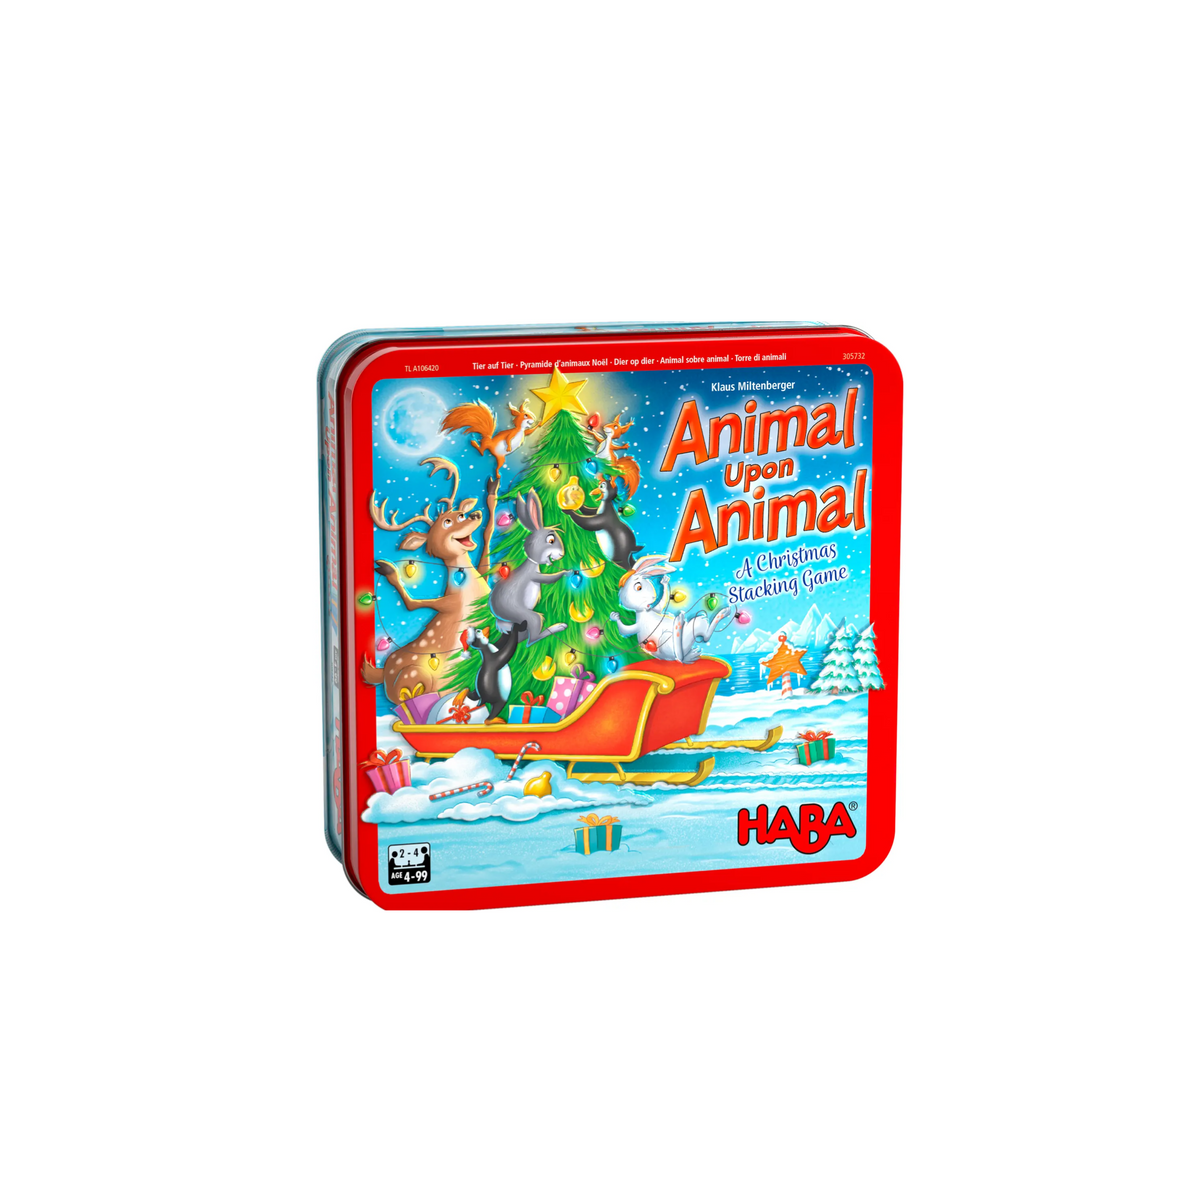 Animal Upon Animal Christmas Stacking Game